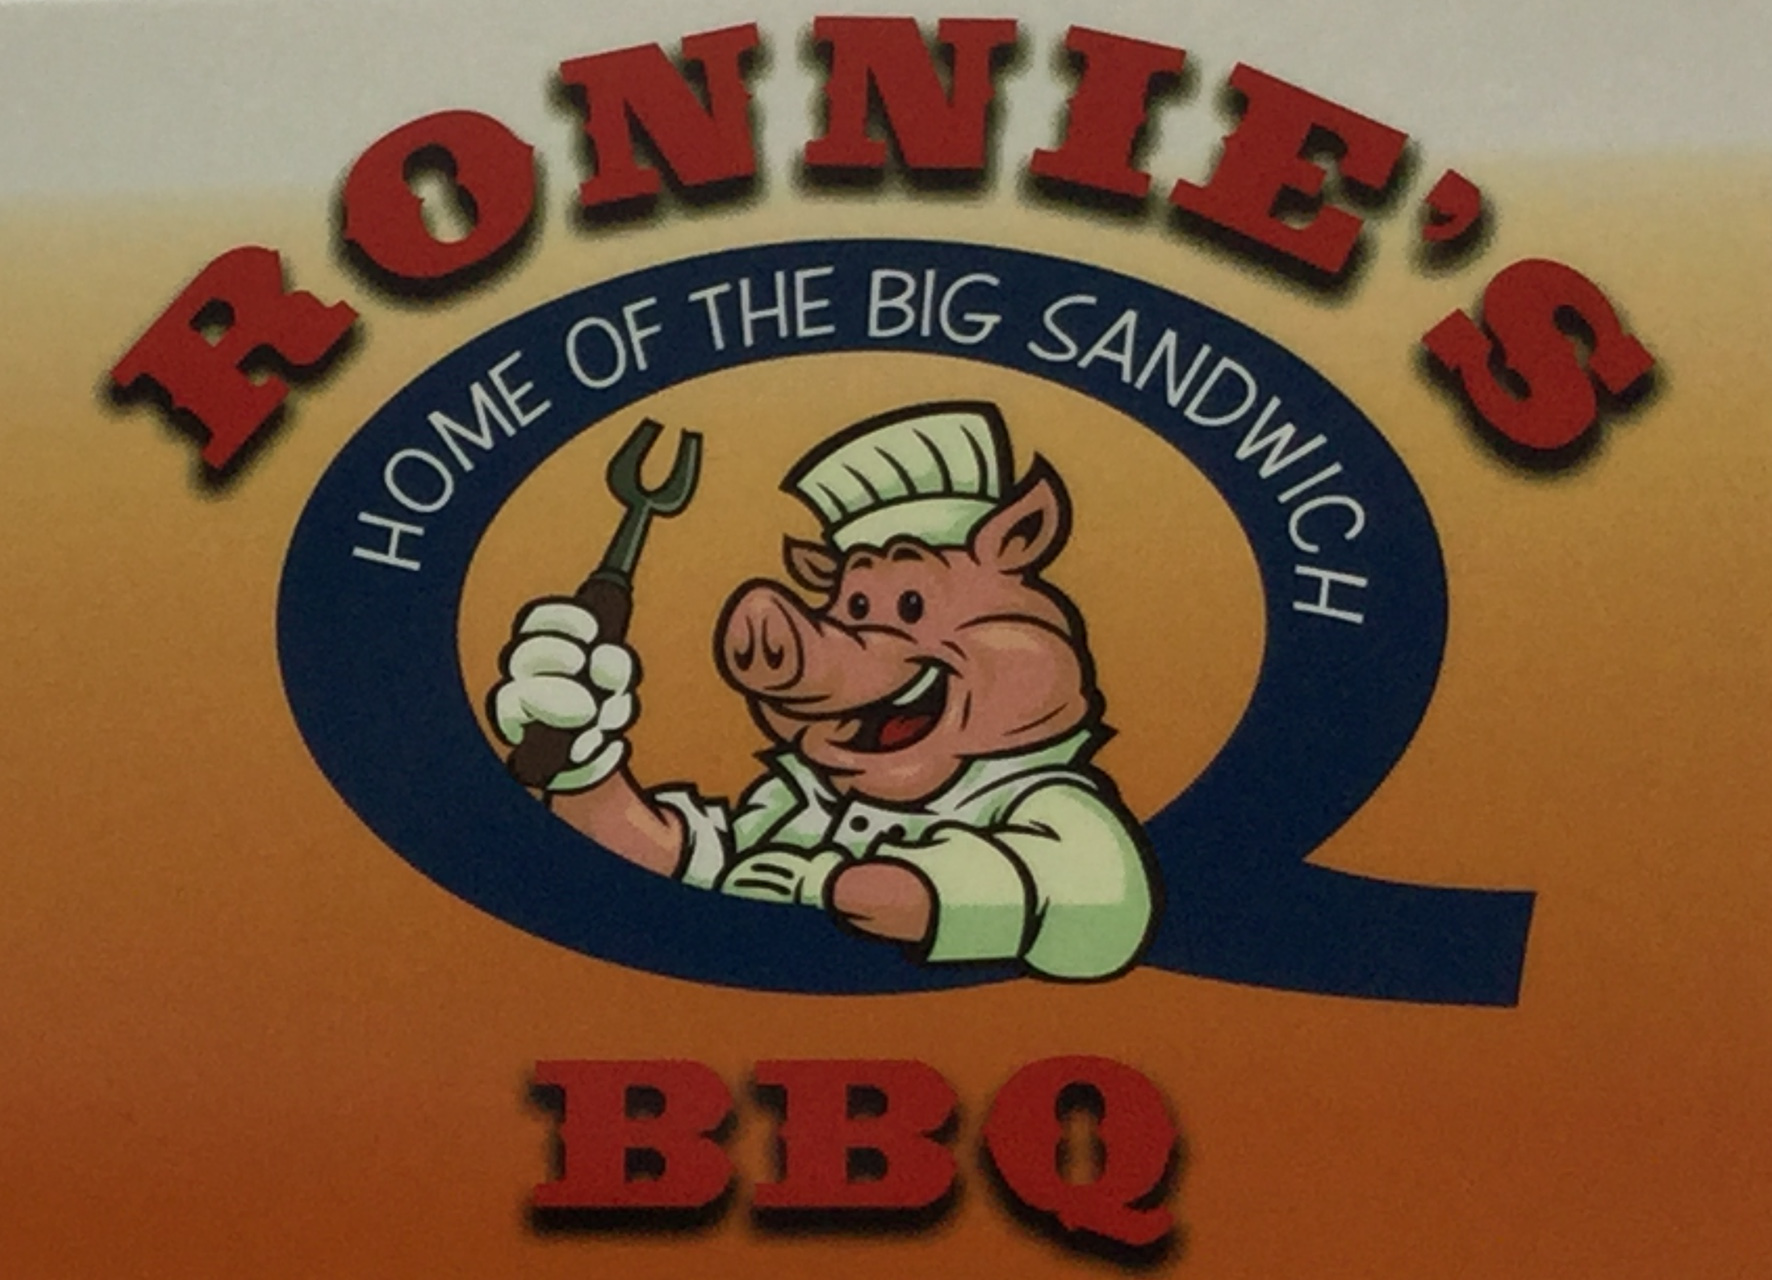 Ronnie's Q. BBQ